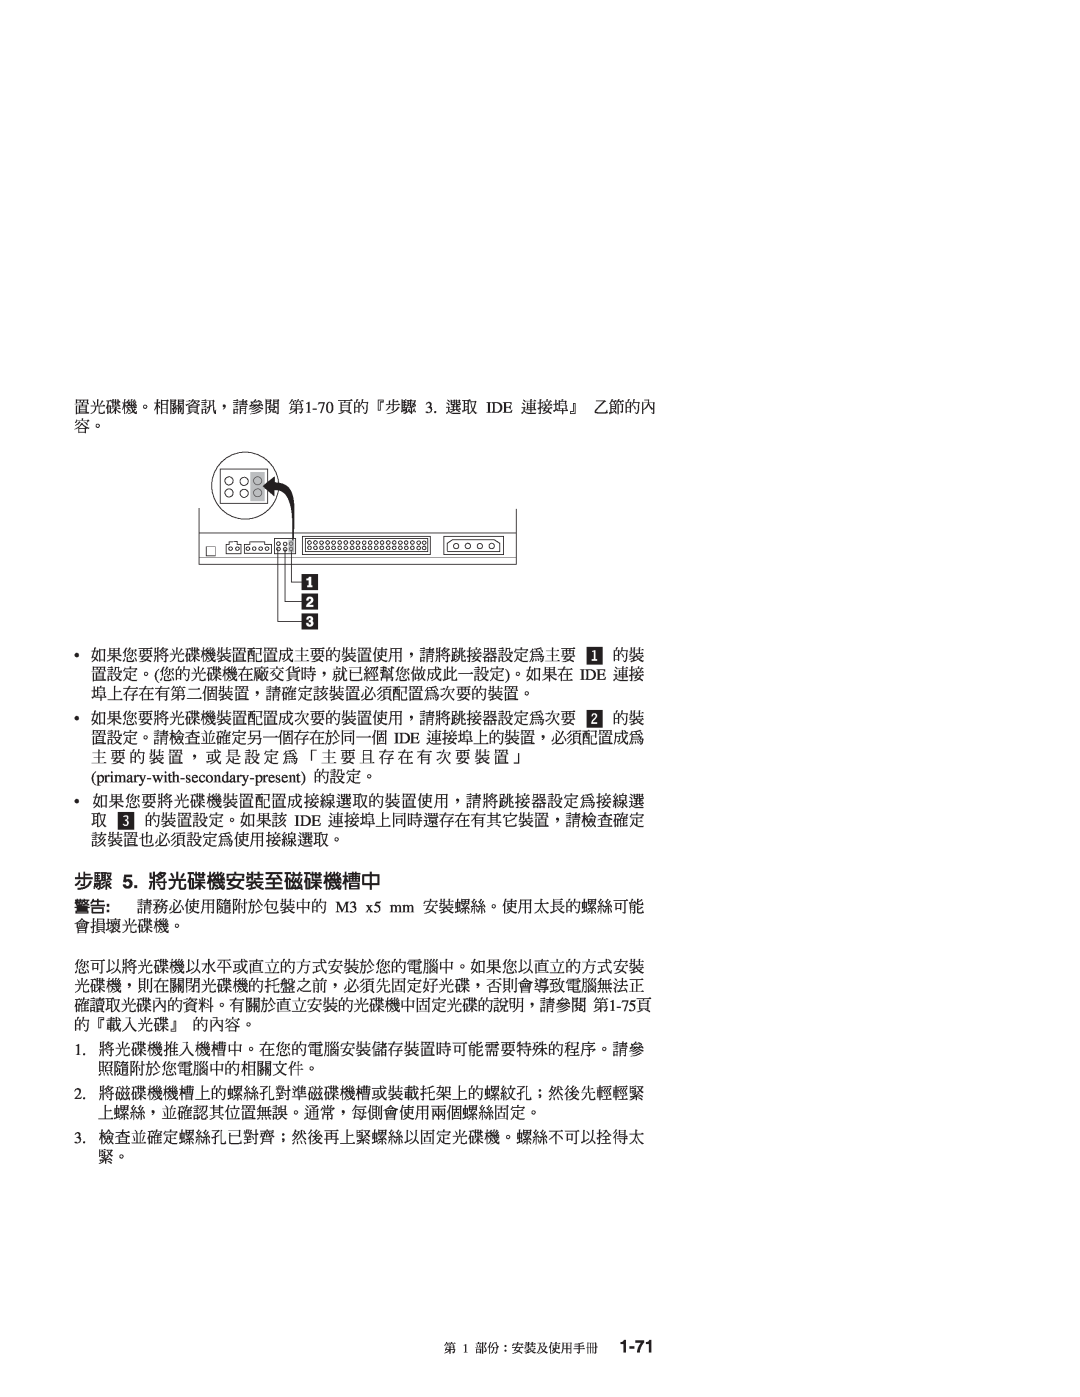 IBM 71P7279 manual BJ 5. N ≈w ≈ñ 